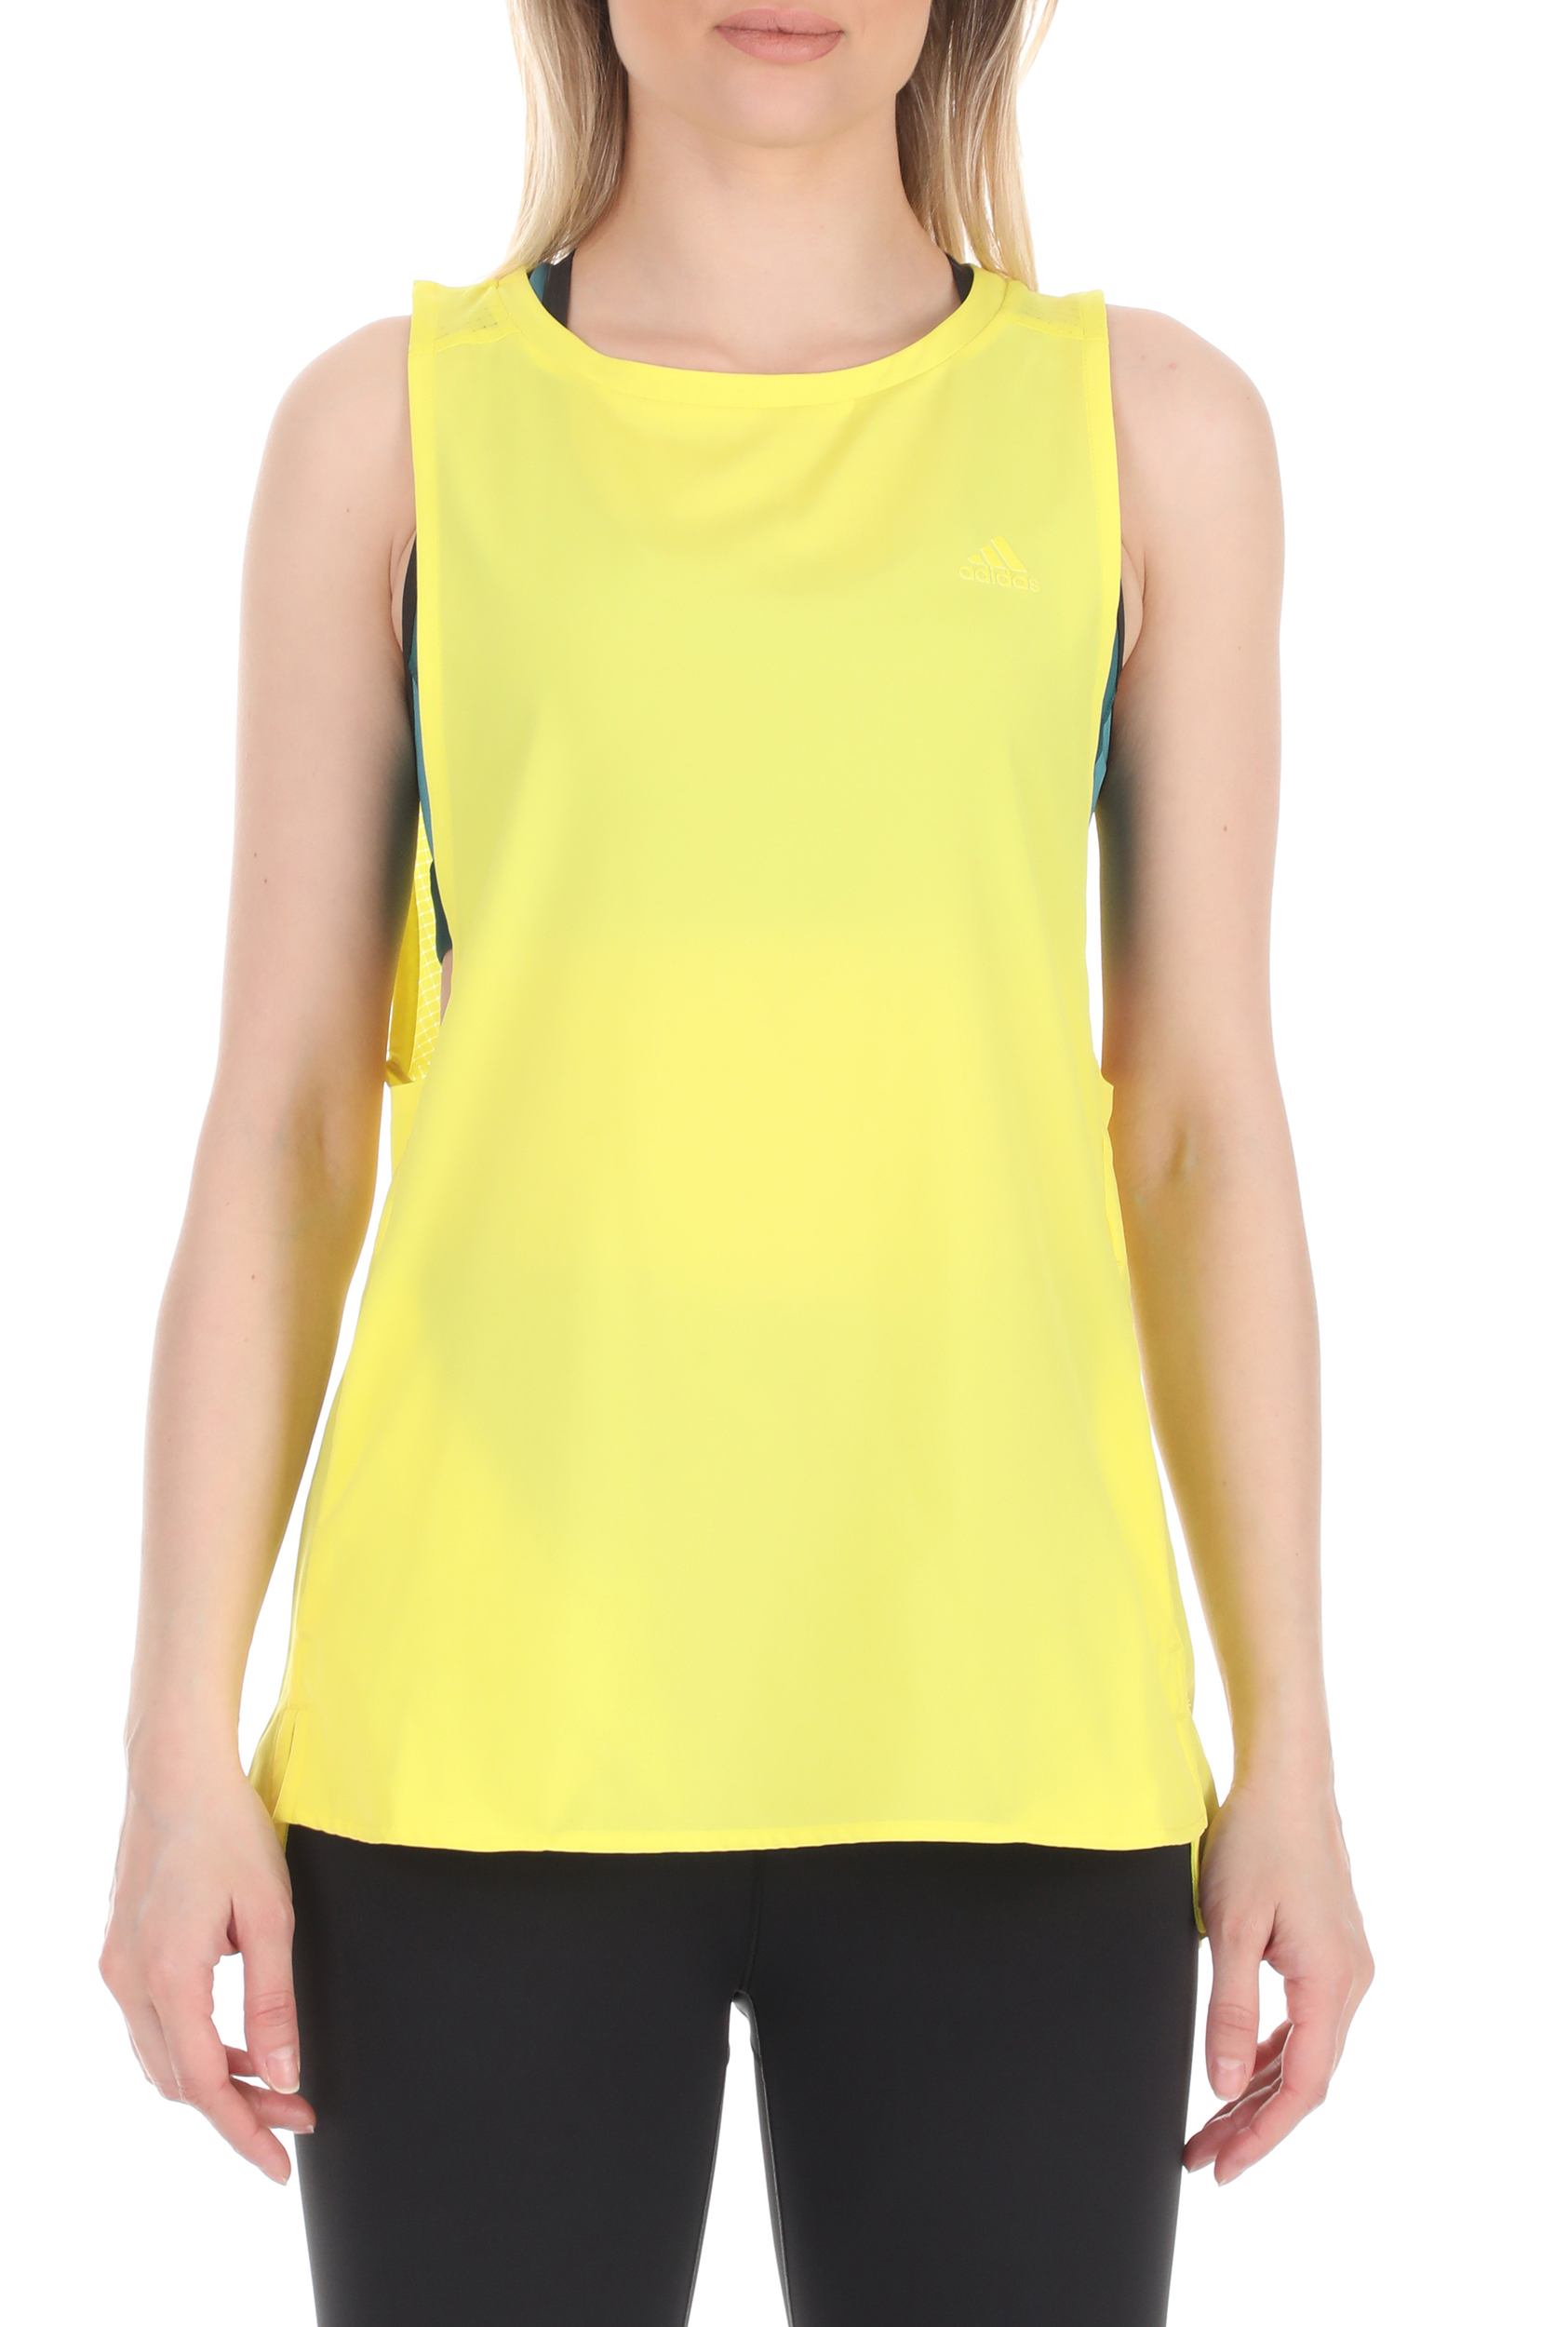 Γυναικεία/Ρούχα/Αθλητικά/T-shirt-Τοπ adidas Performance - Γυναικείo top adidas Performance κίτρινο